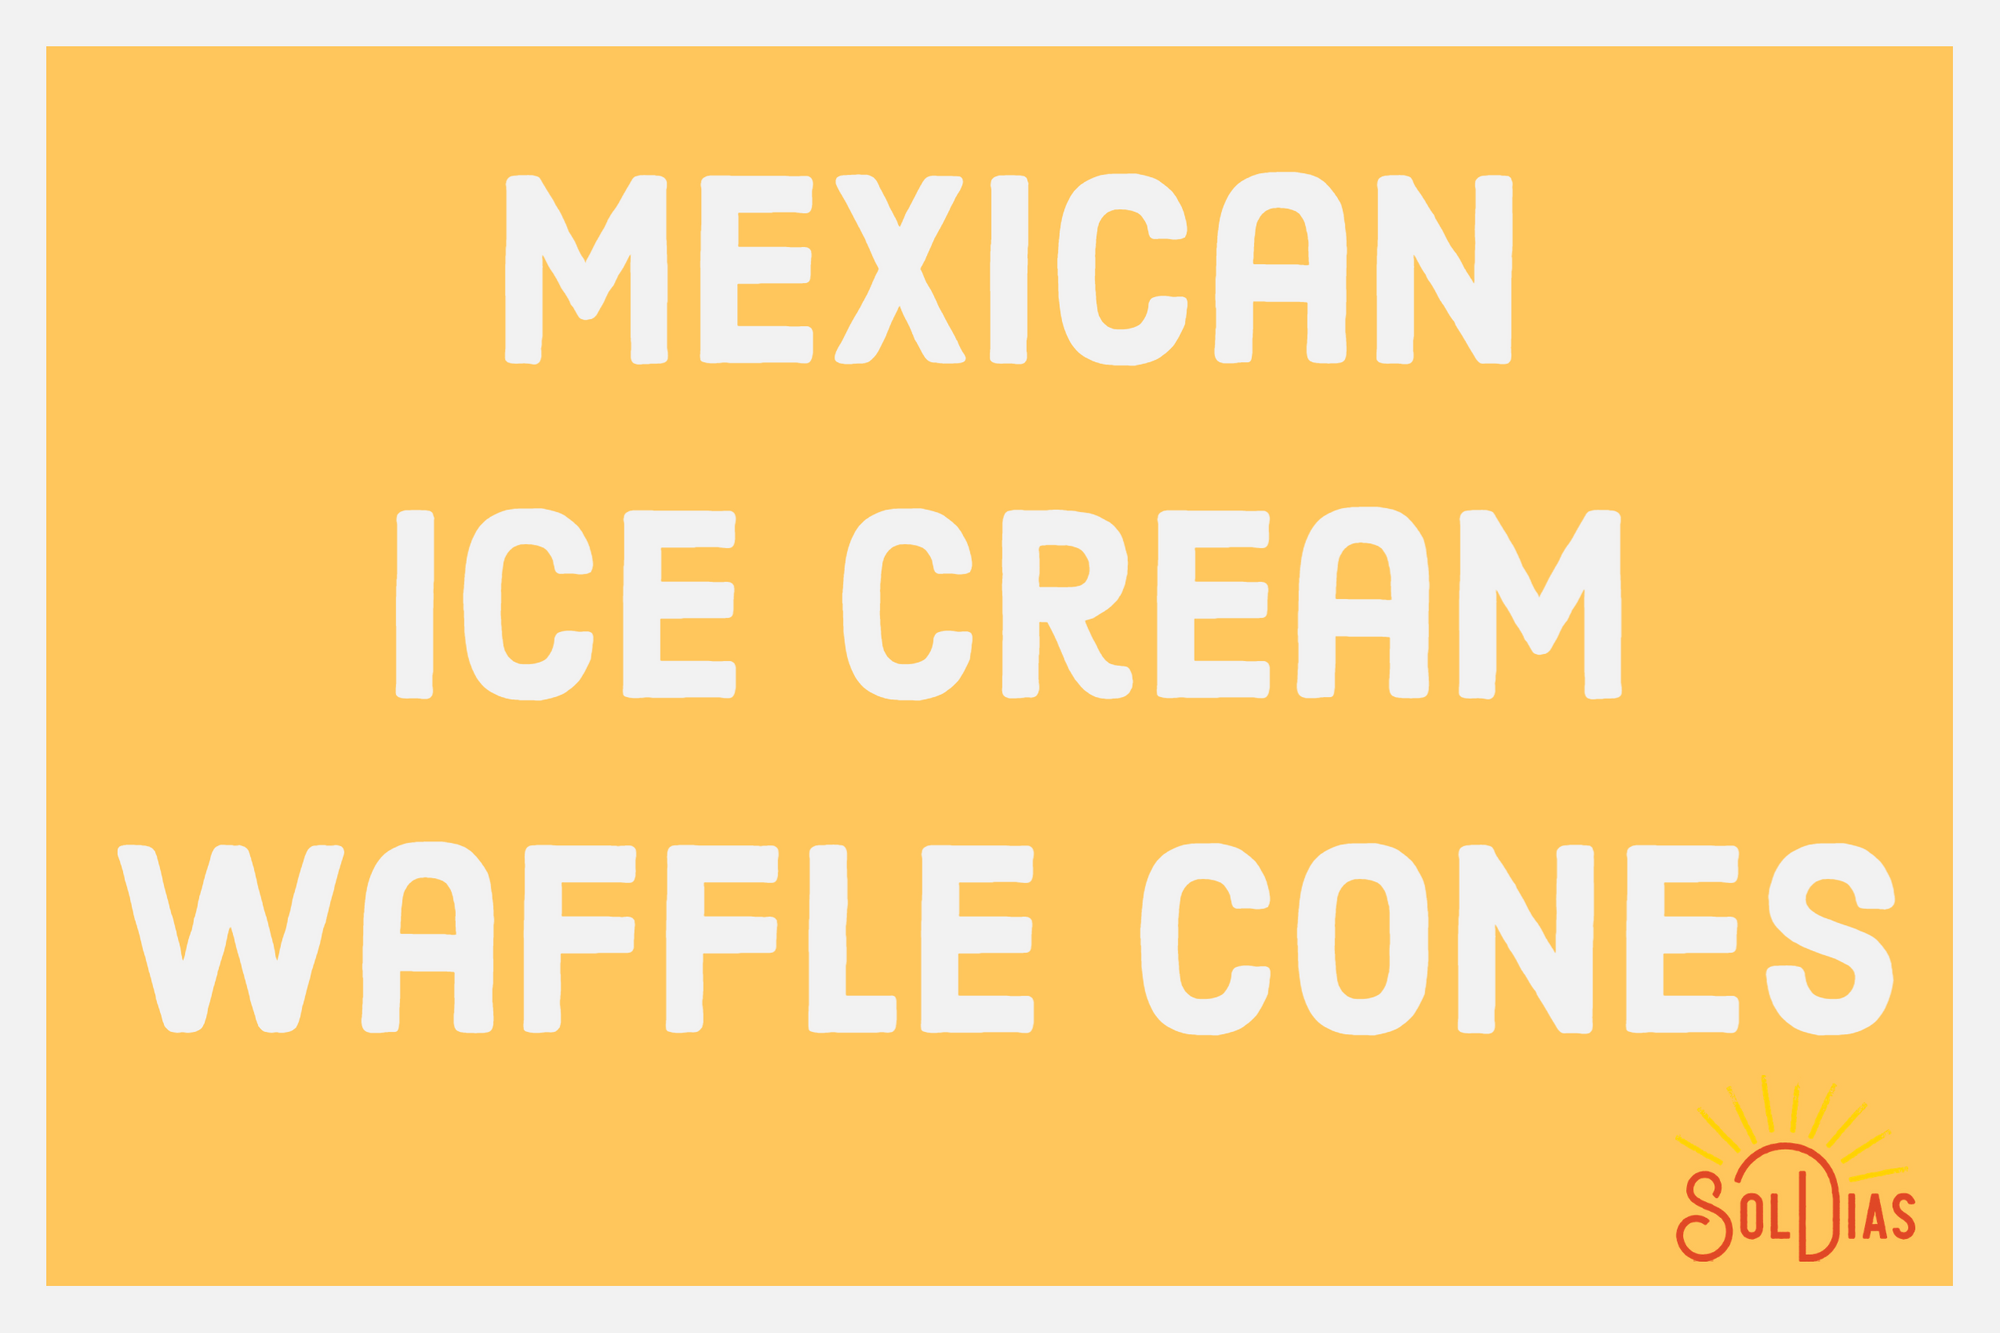 Mexican Ice Cream Waffle Cones